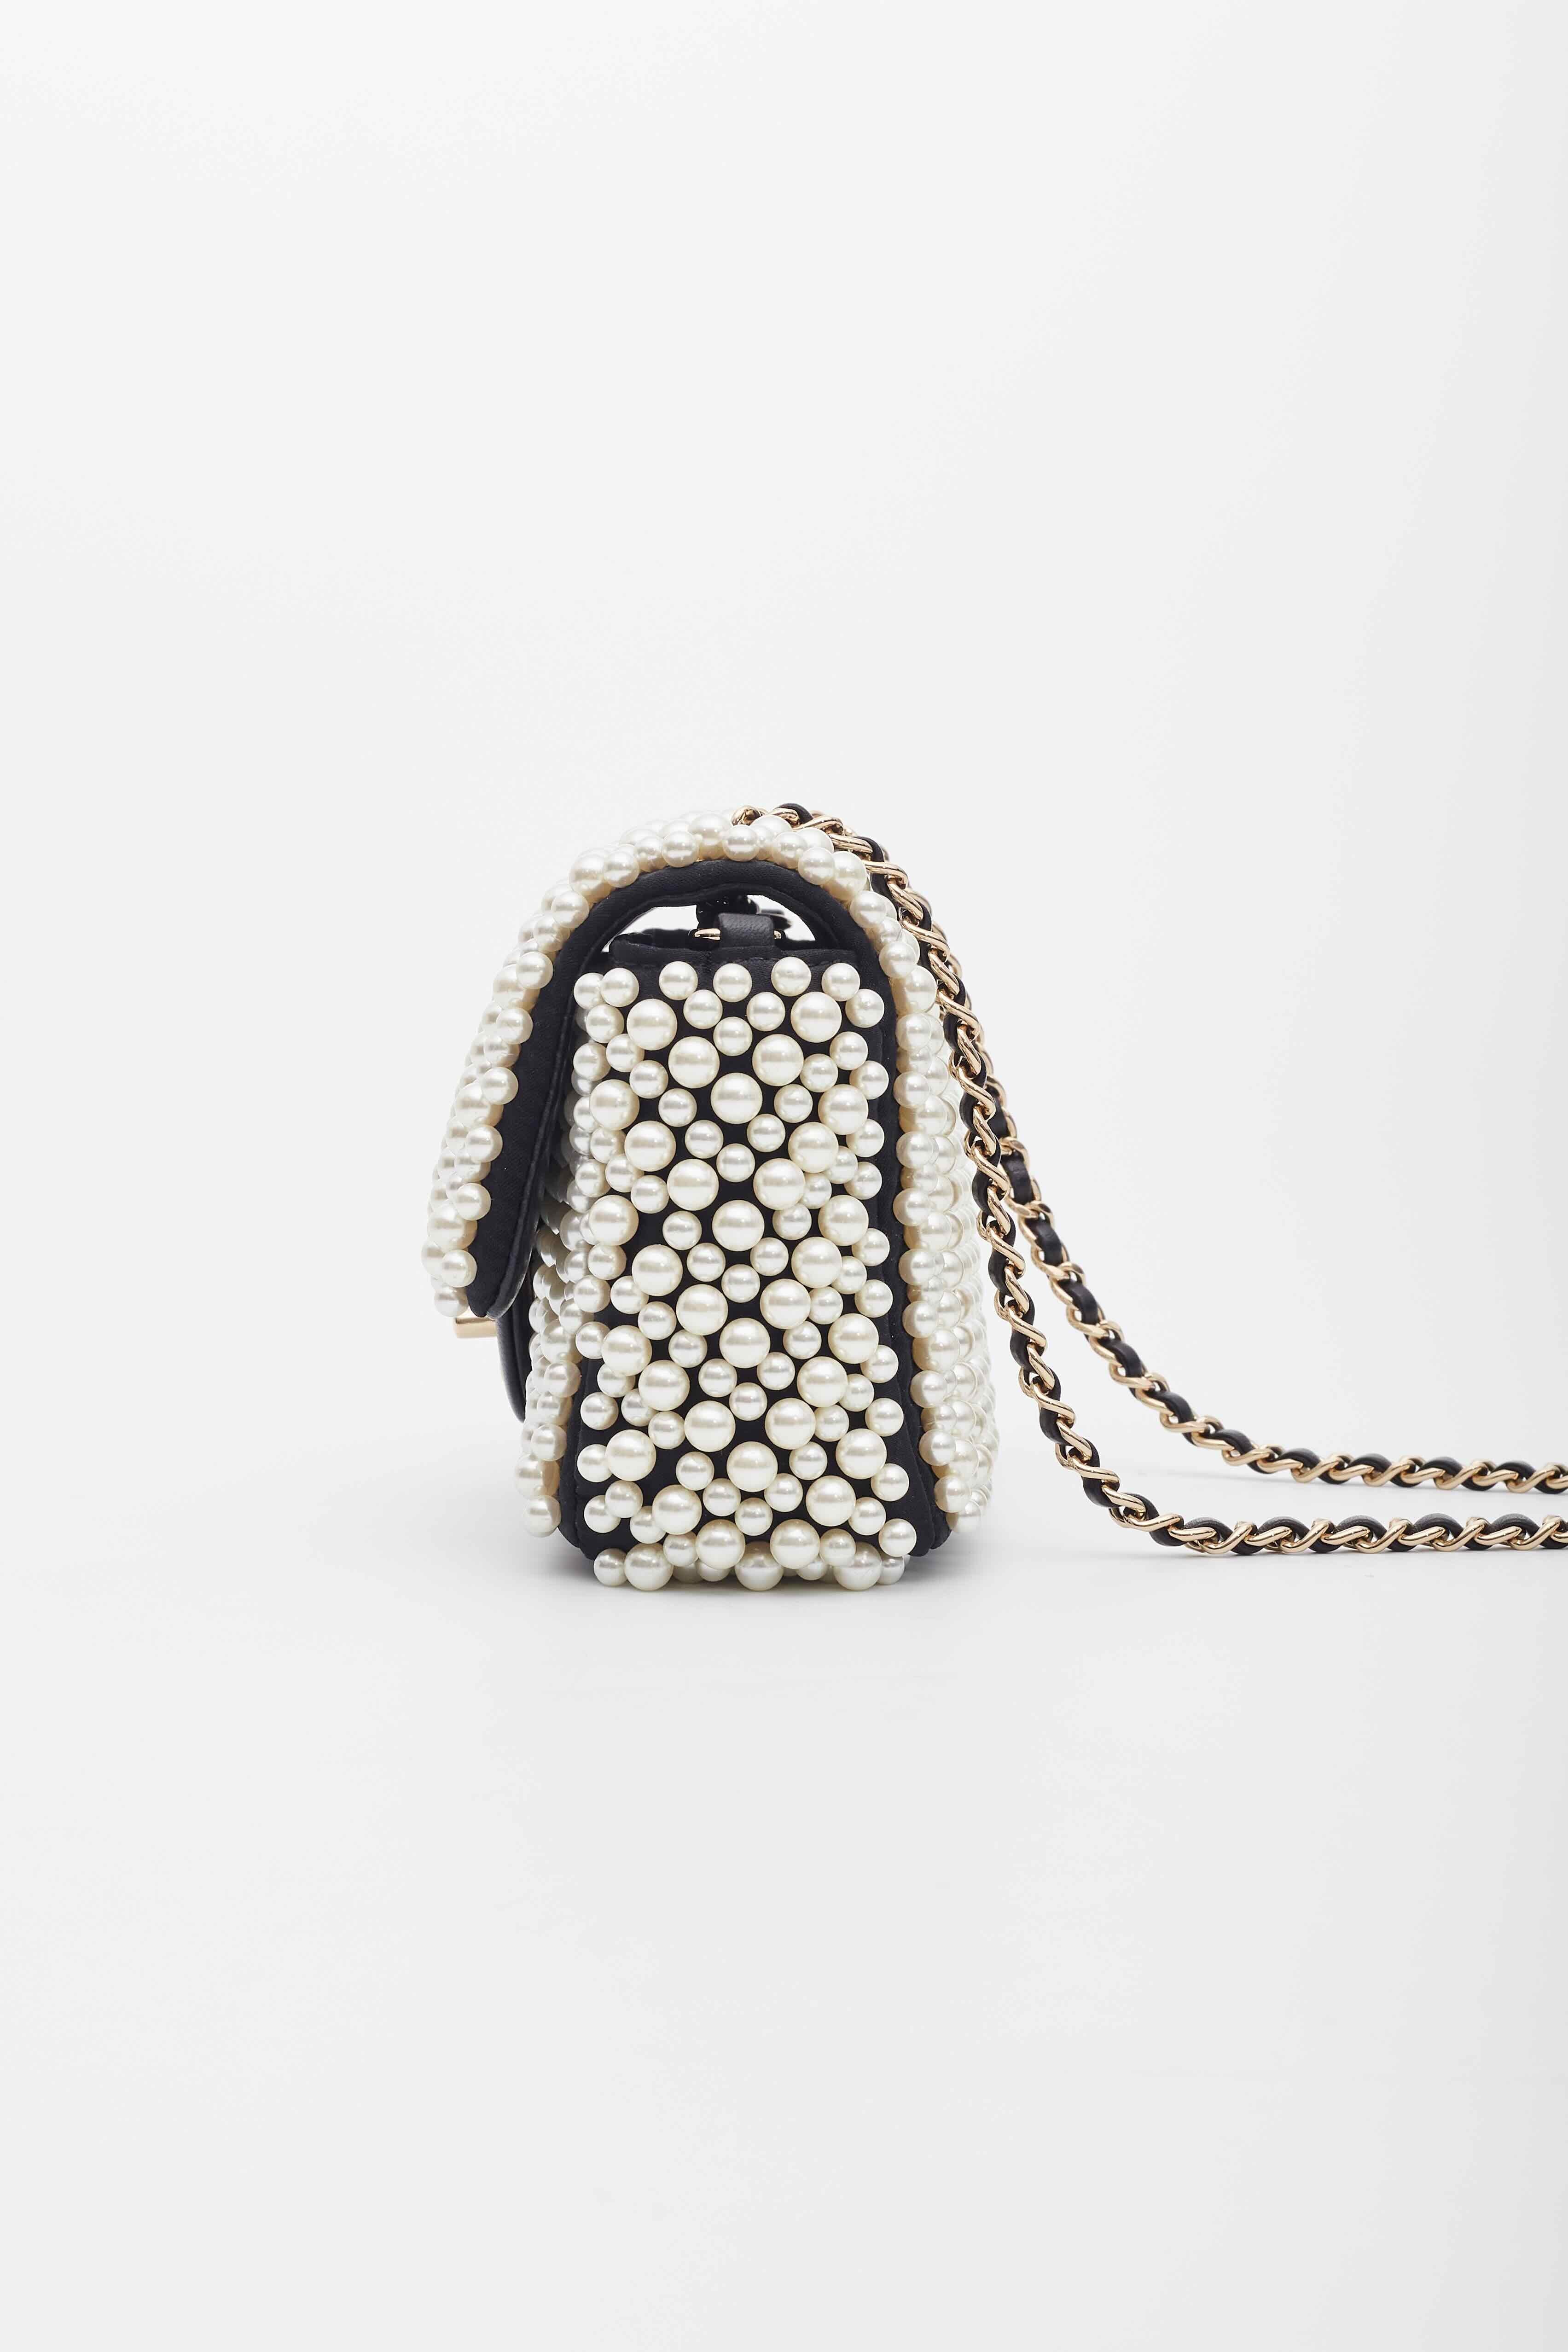 Women's Chanel Black Lambskin Pearl on Flap Bag For Sale